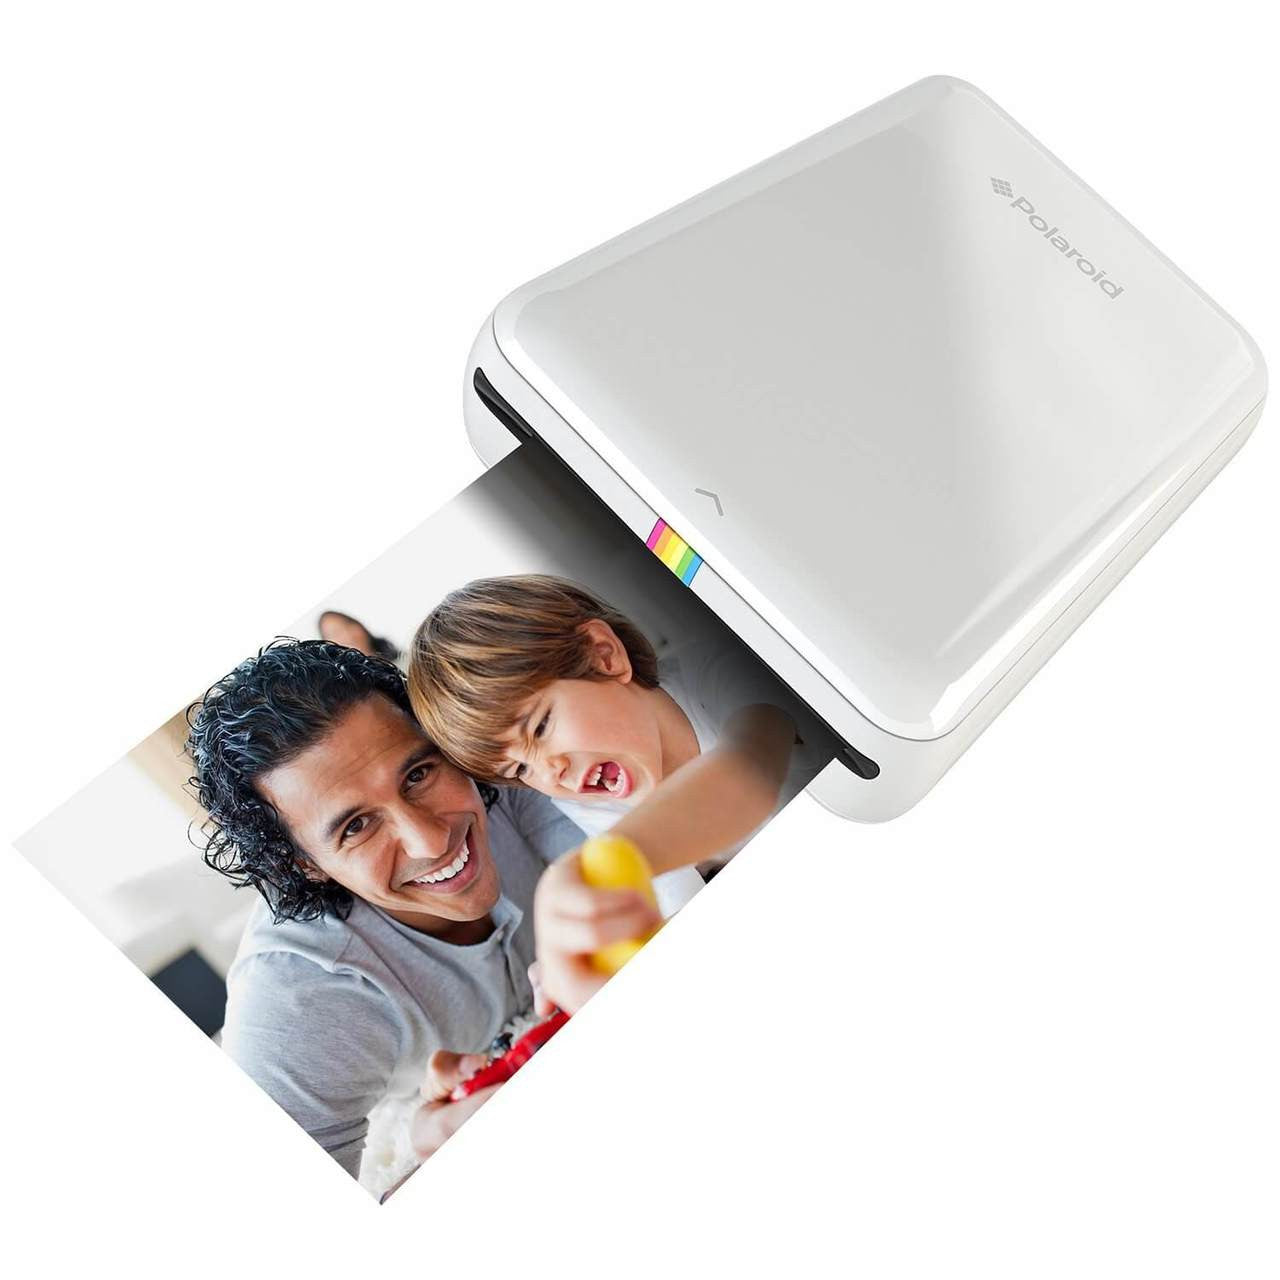 Polaroid Zip Mobile Photo Printer